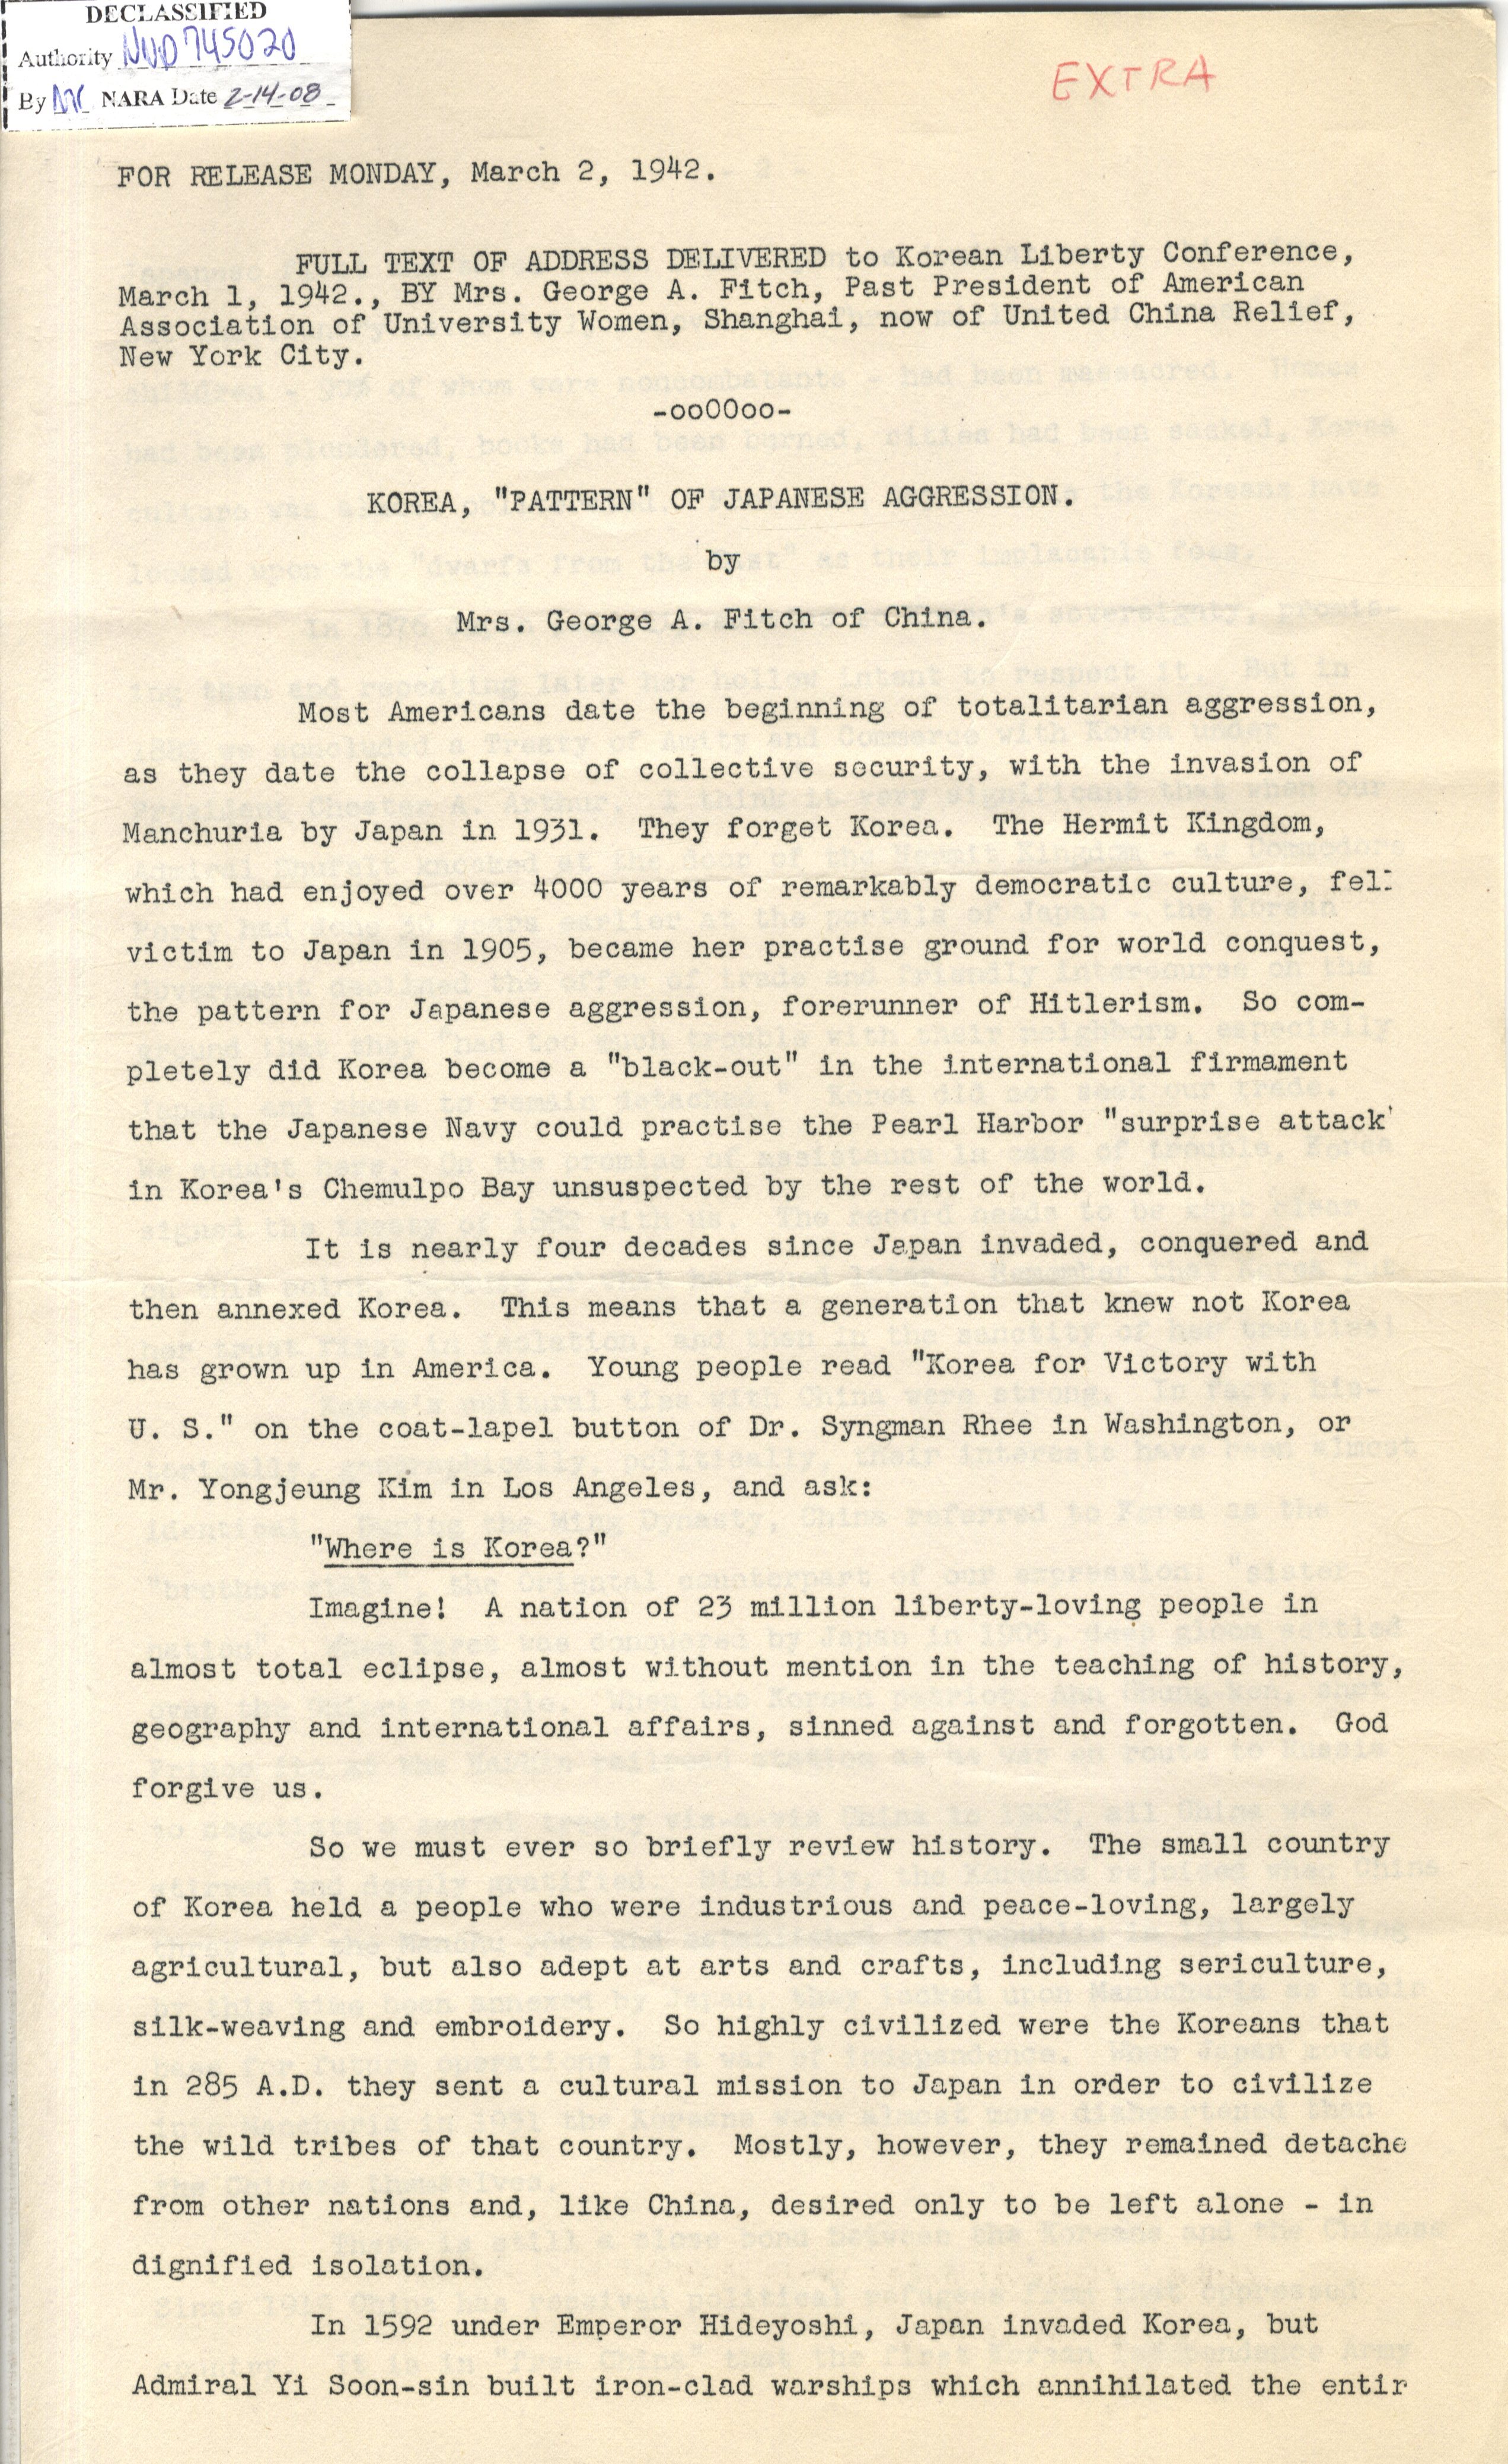 자대학 협회 회장이며 현 뉴욕 시 중국 연합 구호회 회장인 조지 A. 피치(George A. Fitch) 여사가 1942년 3월 1일 한인자유대회에서 진술한 연설 전문